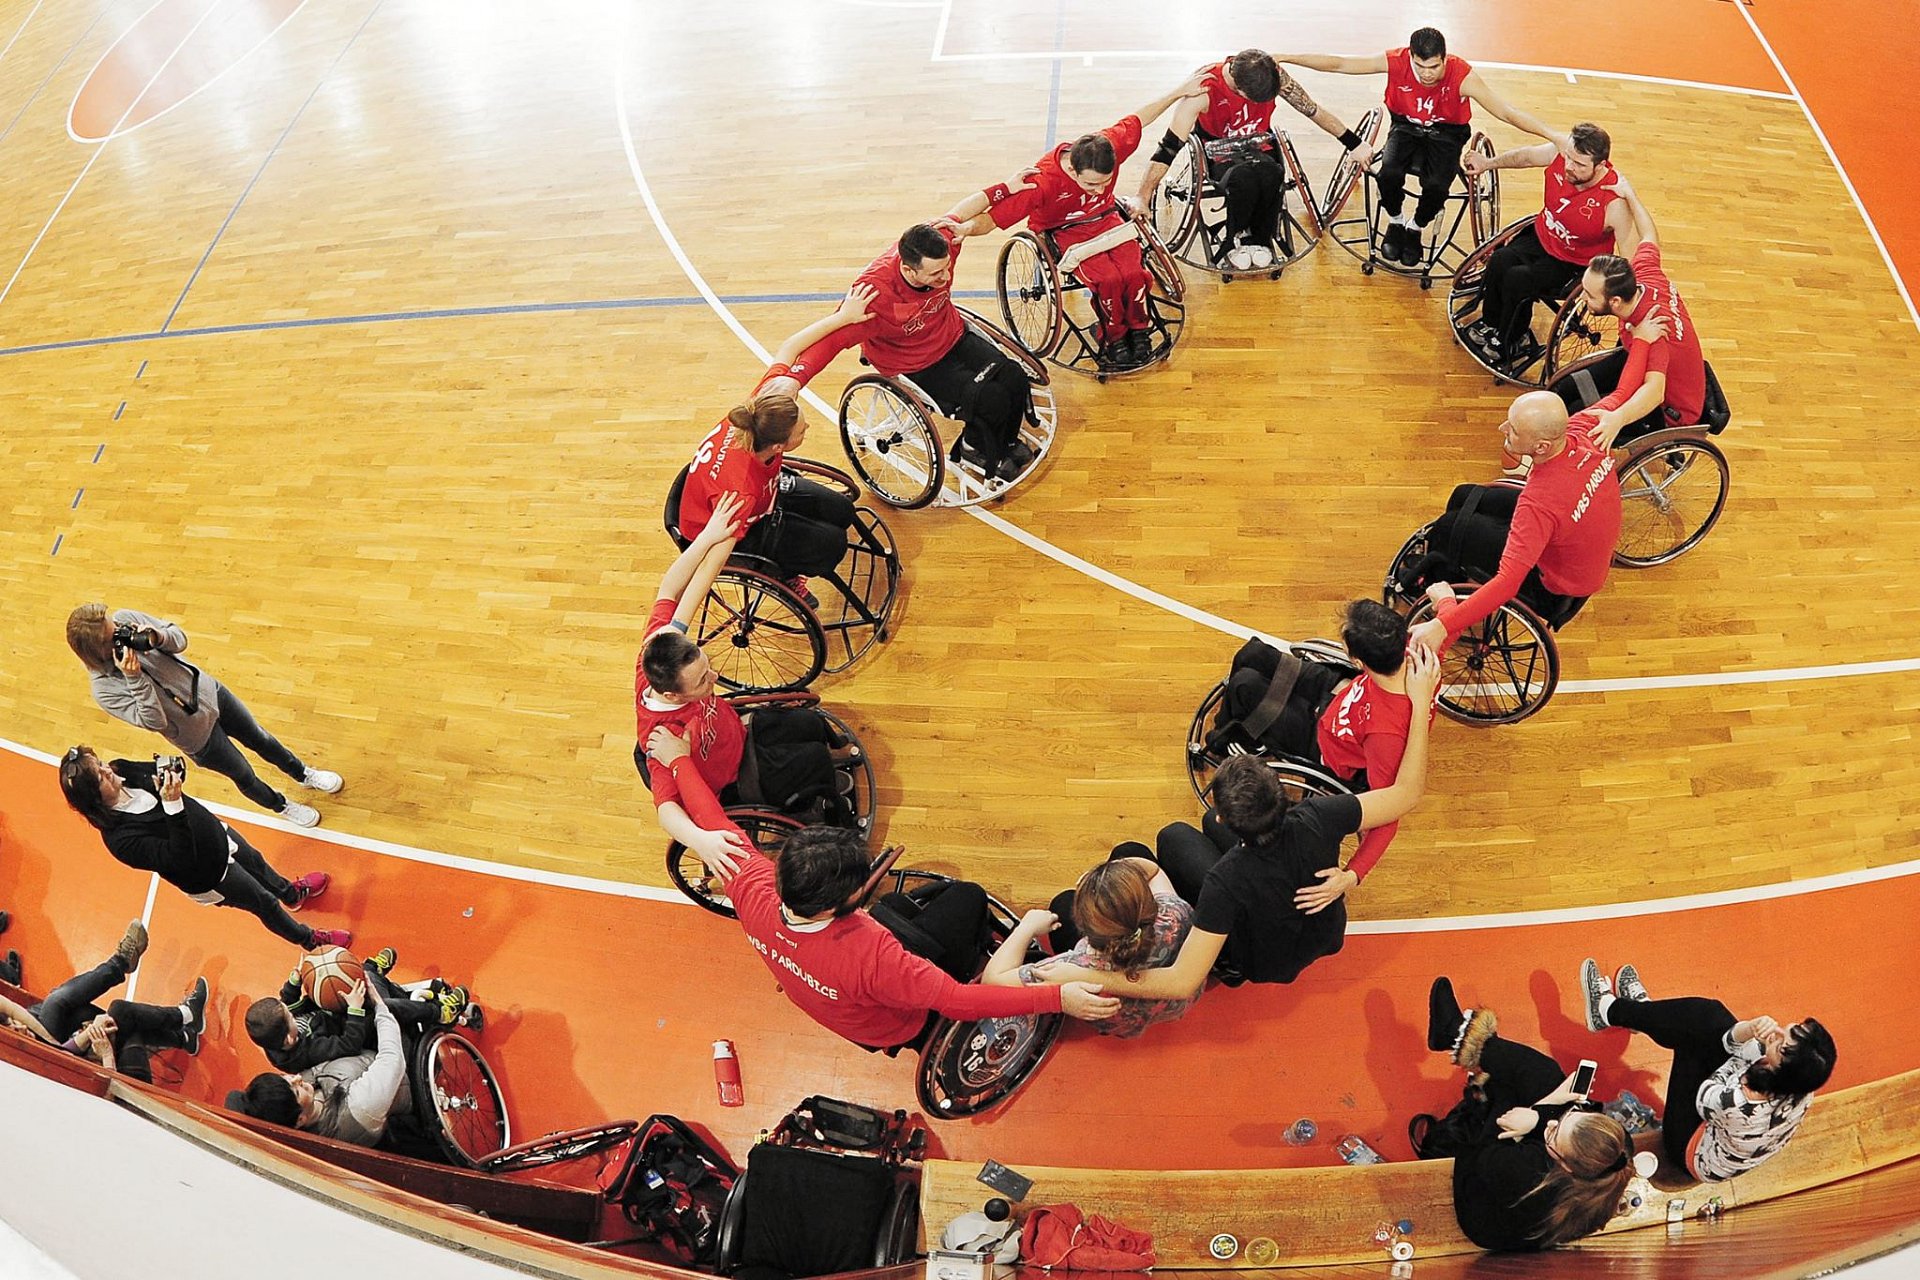 Středoevropský pohár v basketbalu na vozíku - Pardubice